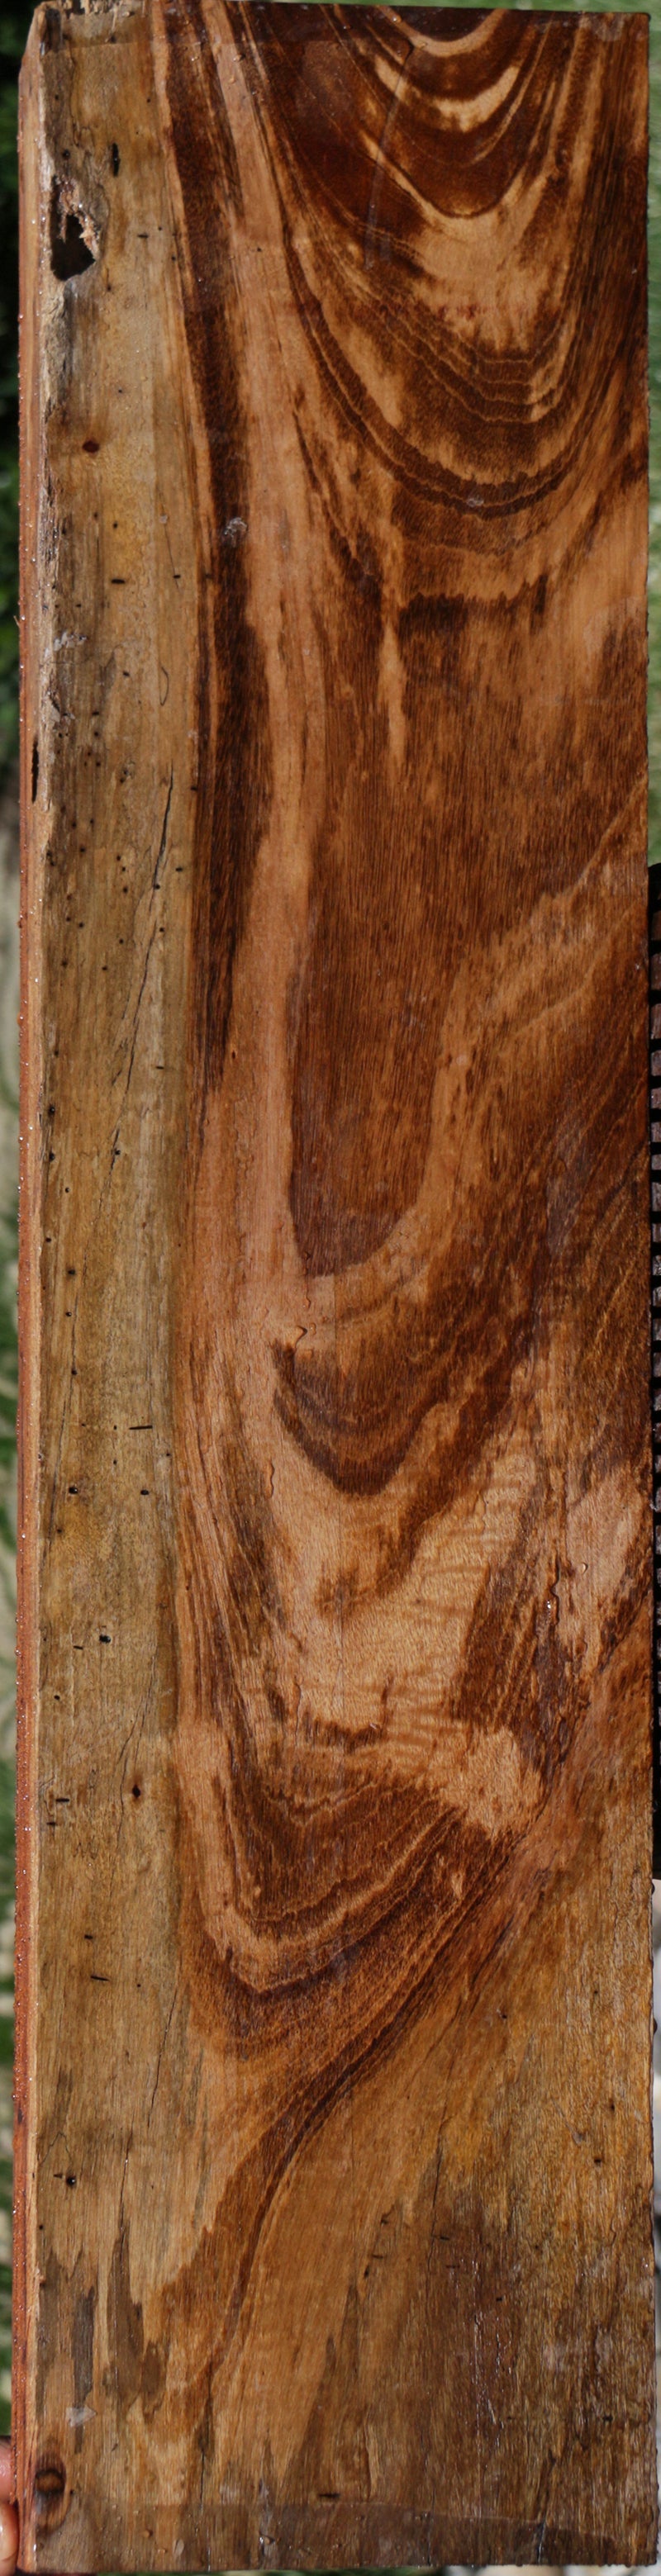 Tigerwood Lumber